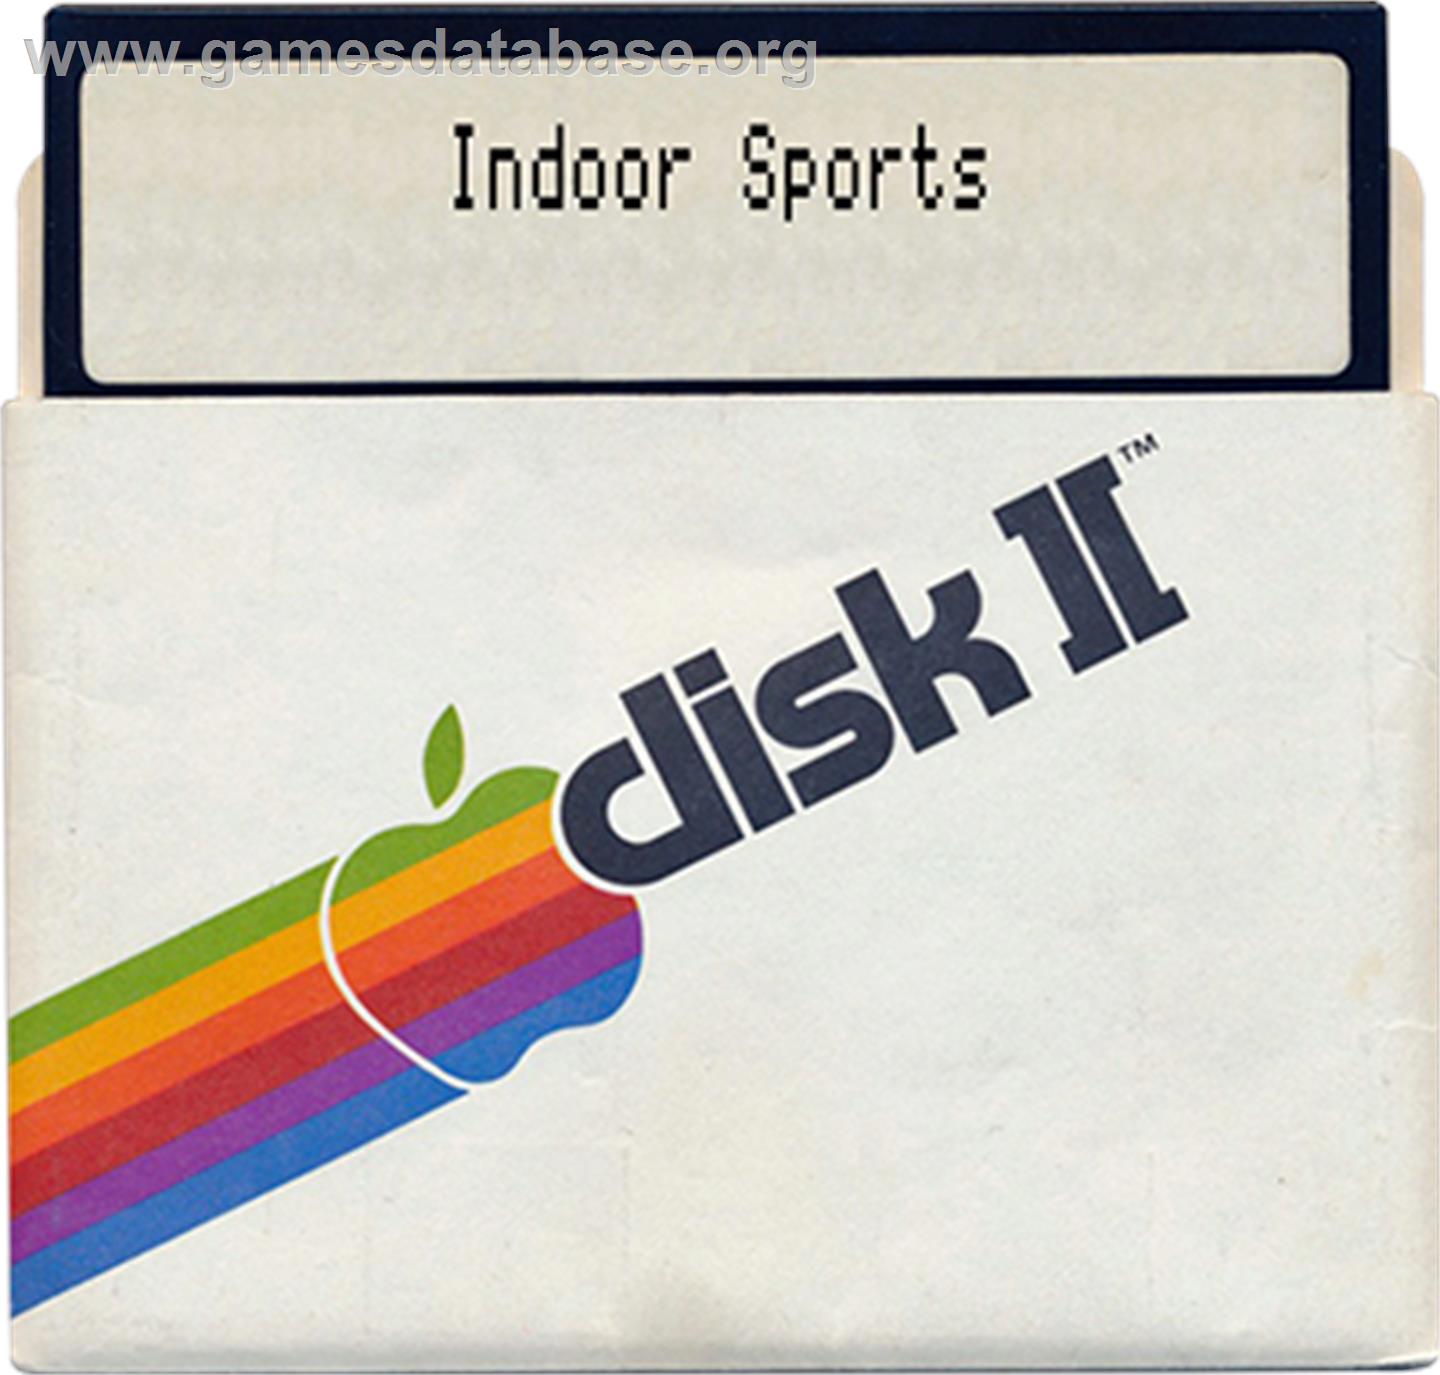 Snooper Troops - Apple II - Artwork - Disc